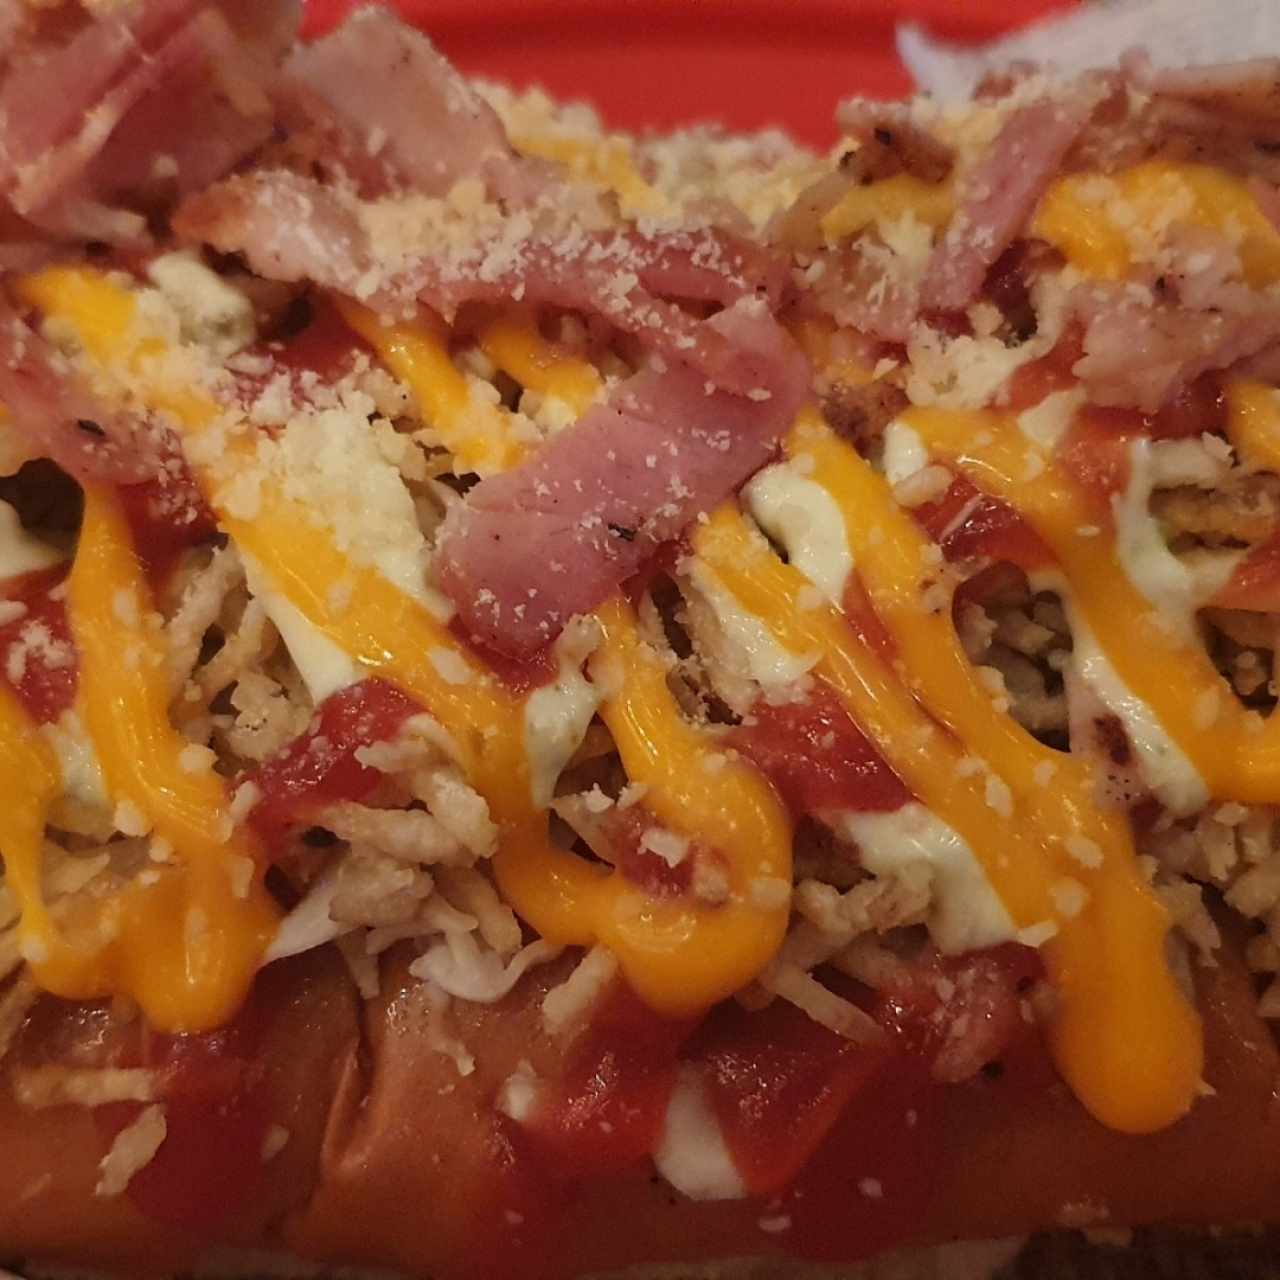 Hot Dog - Bacon Dog